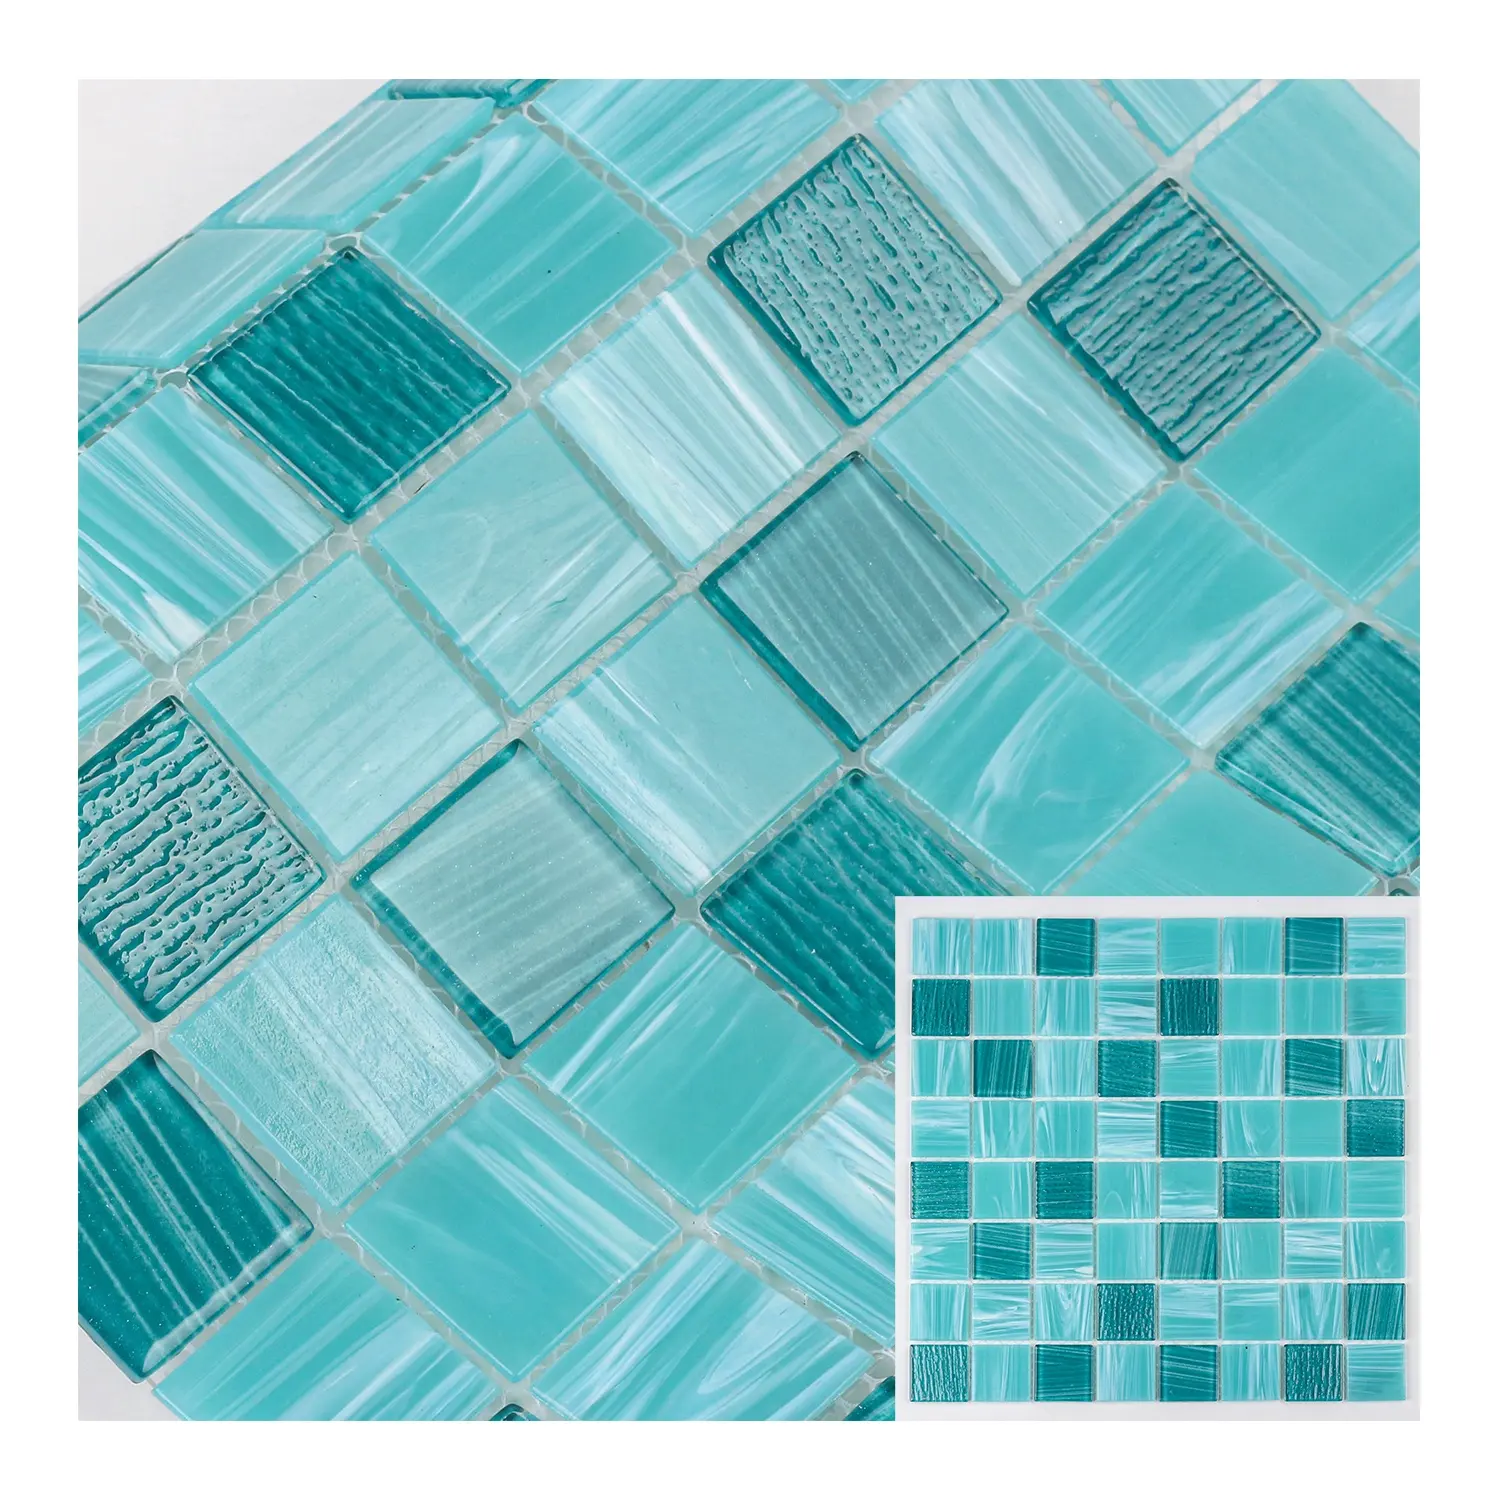 Carreau de mosaïque en verre de piscine de peinture à la main carré vert thermofusible scintillant peu coûteux